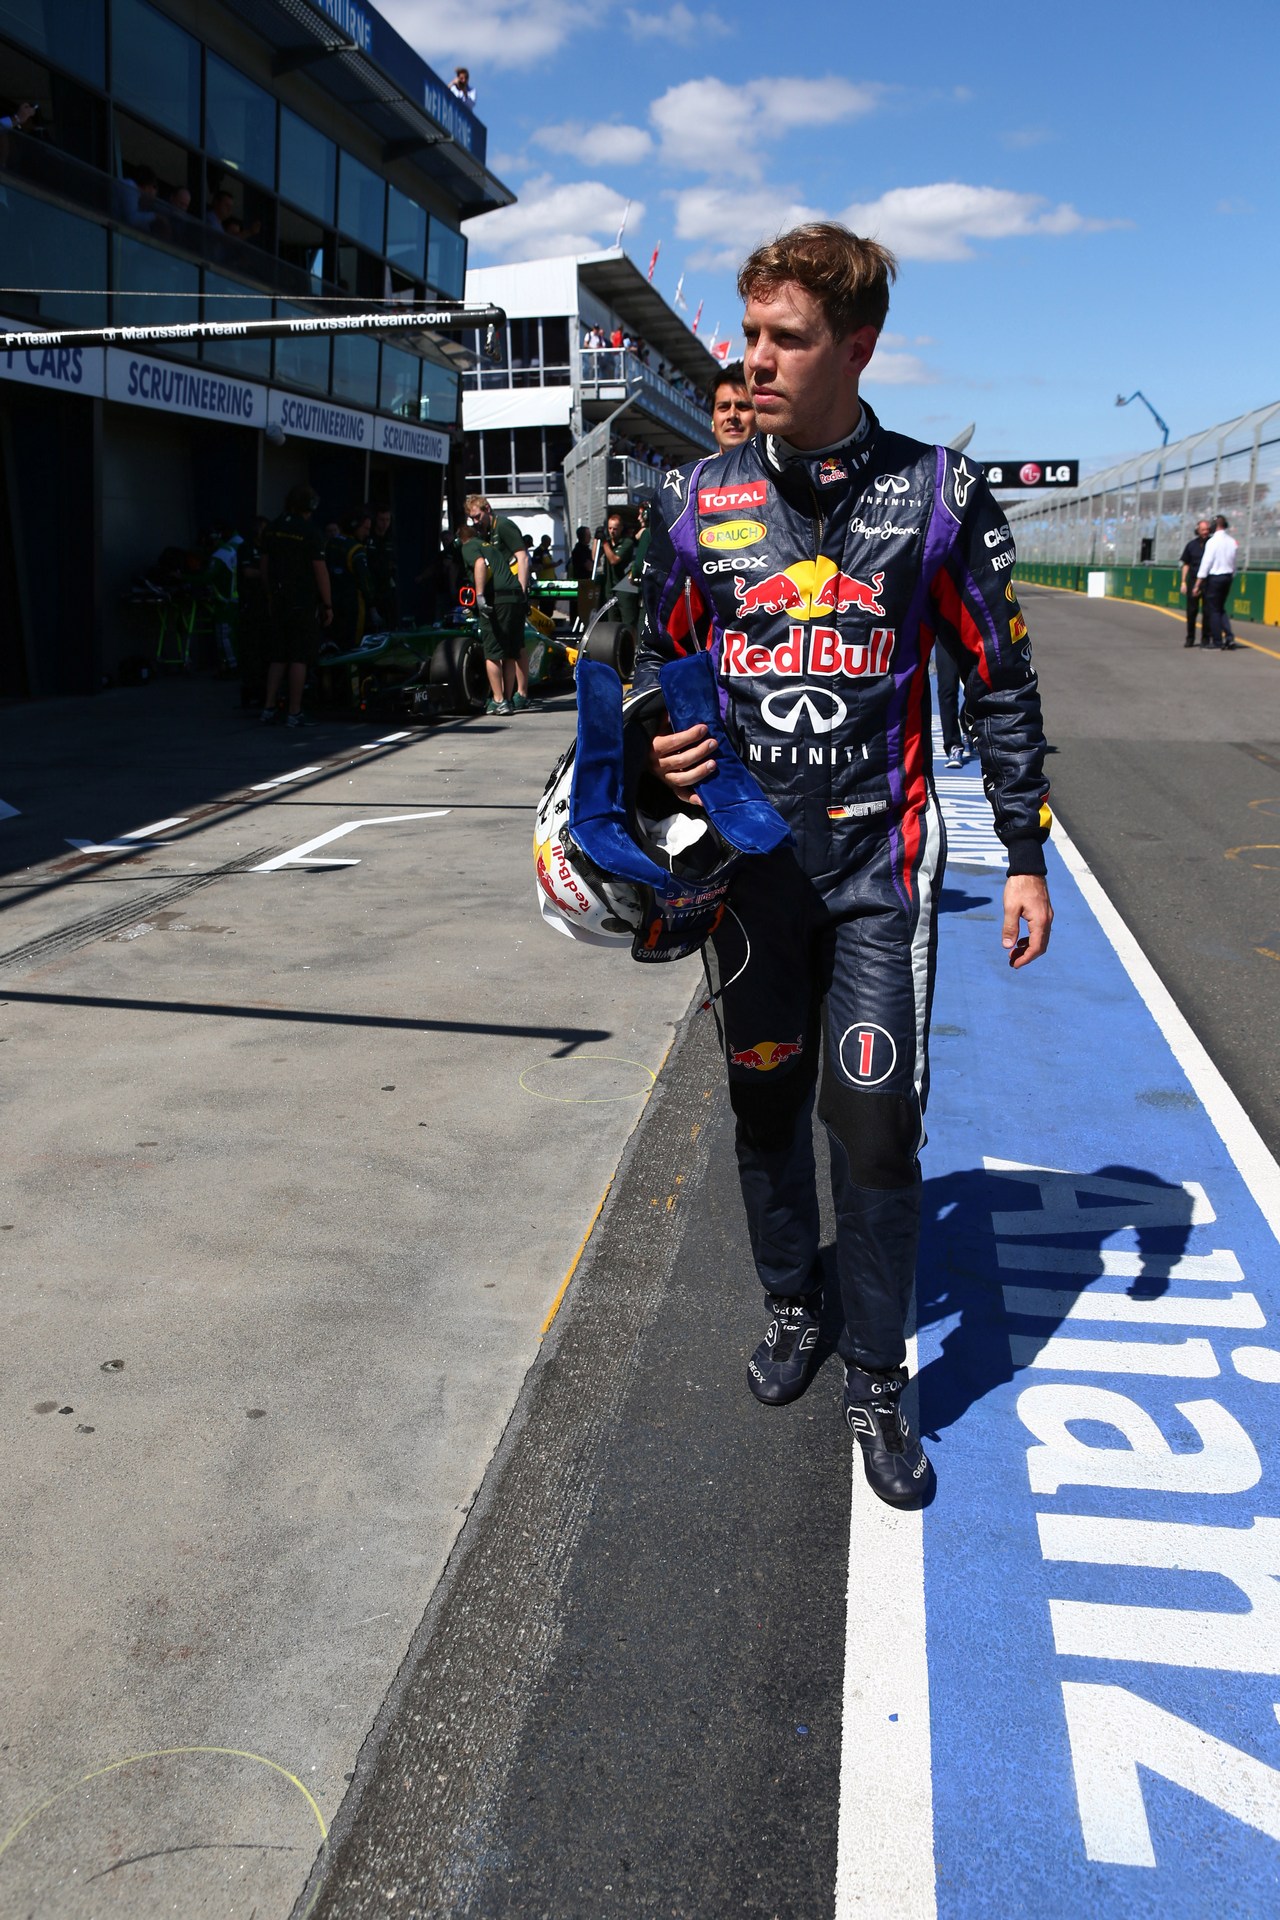 15.03.2013- Free Practice 1, Sebastian Vettel (GER) Red Bull Racing RB9